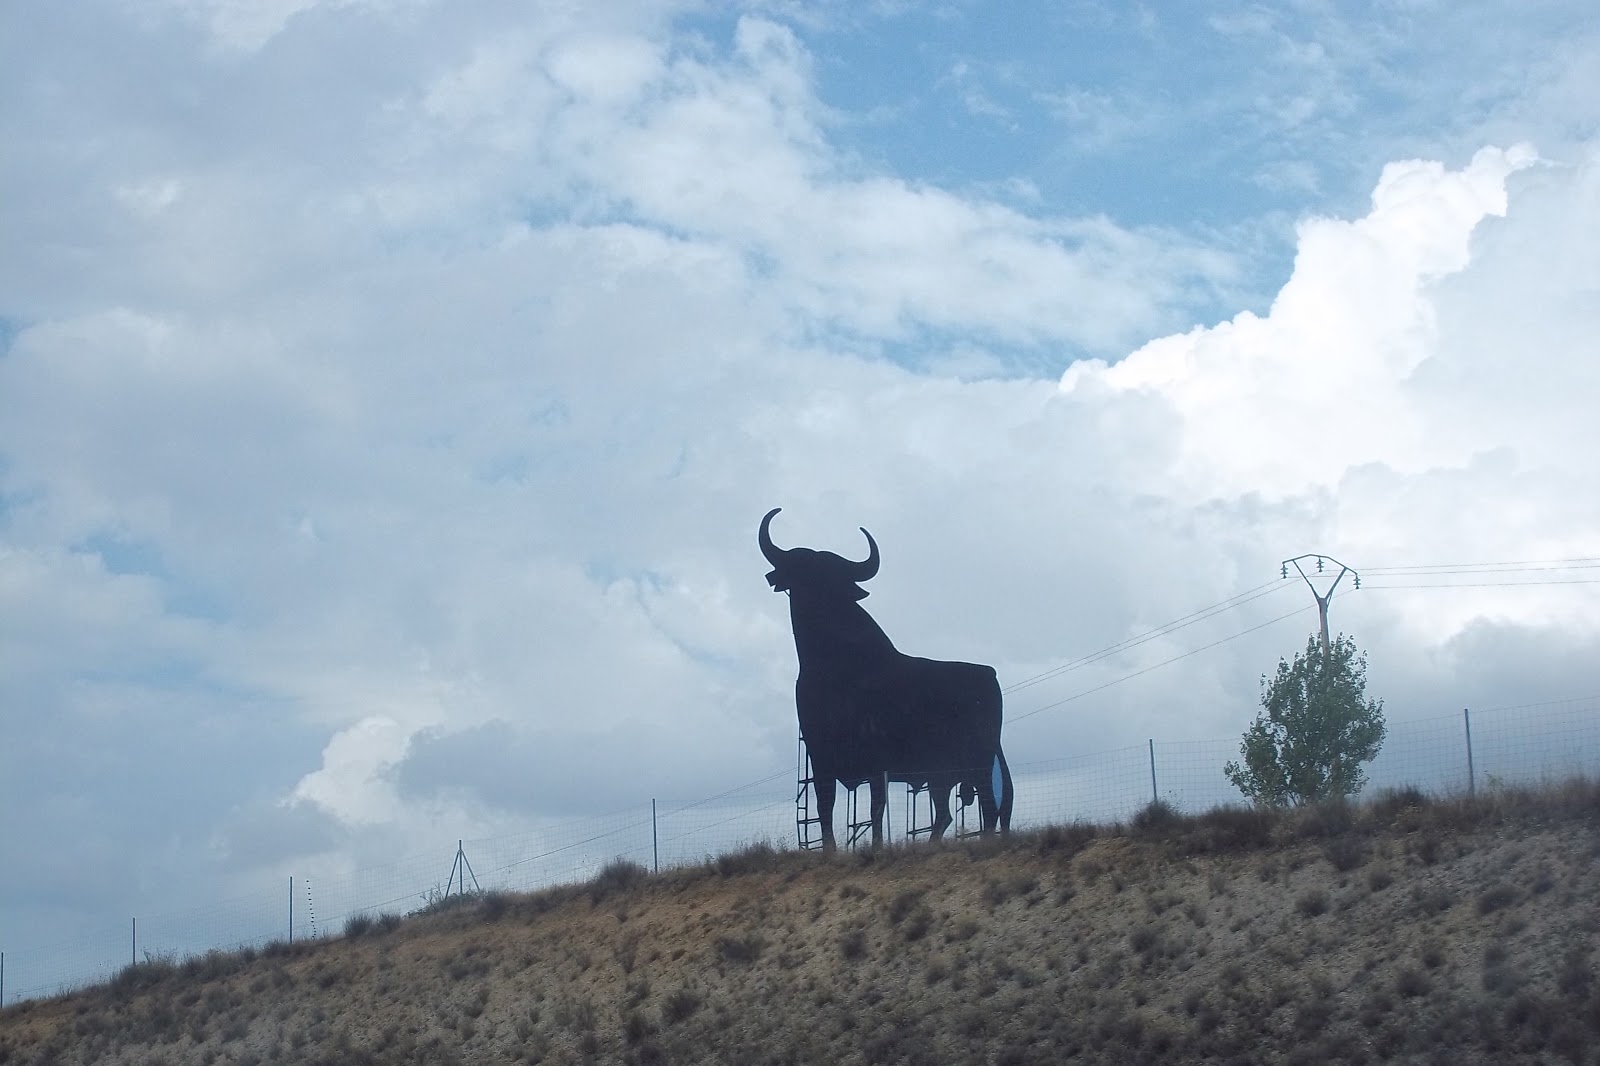 Le foto dell’avventura in autostop in Spagna